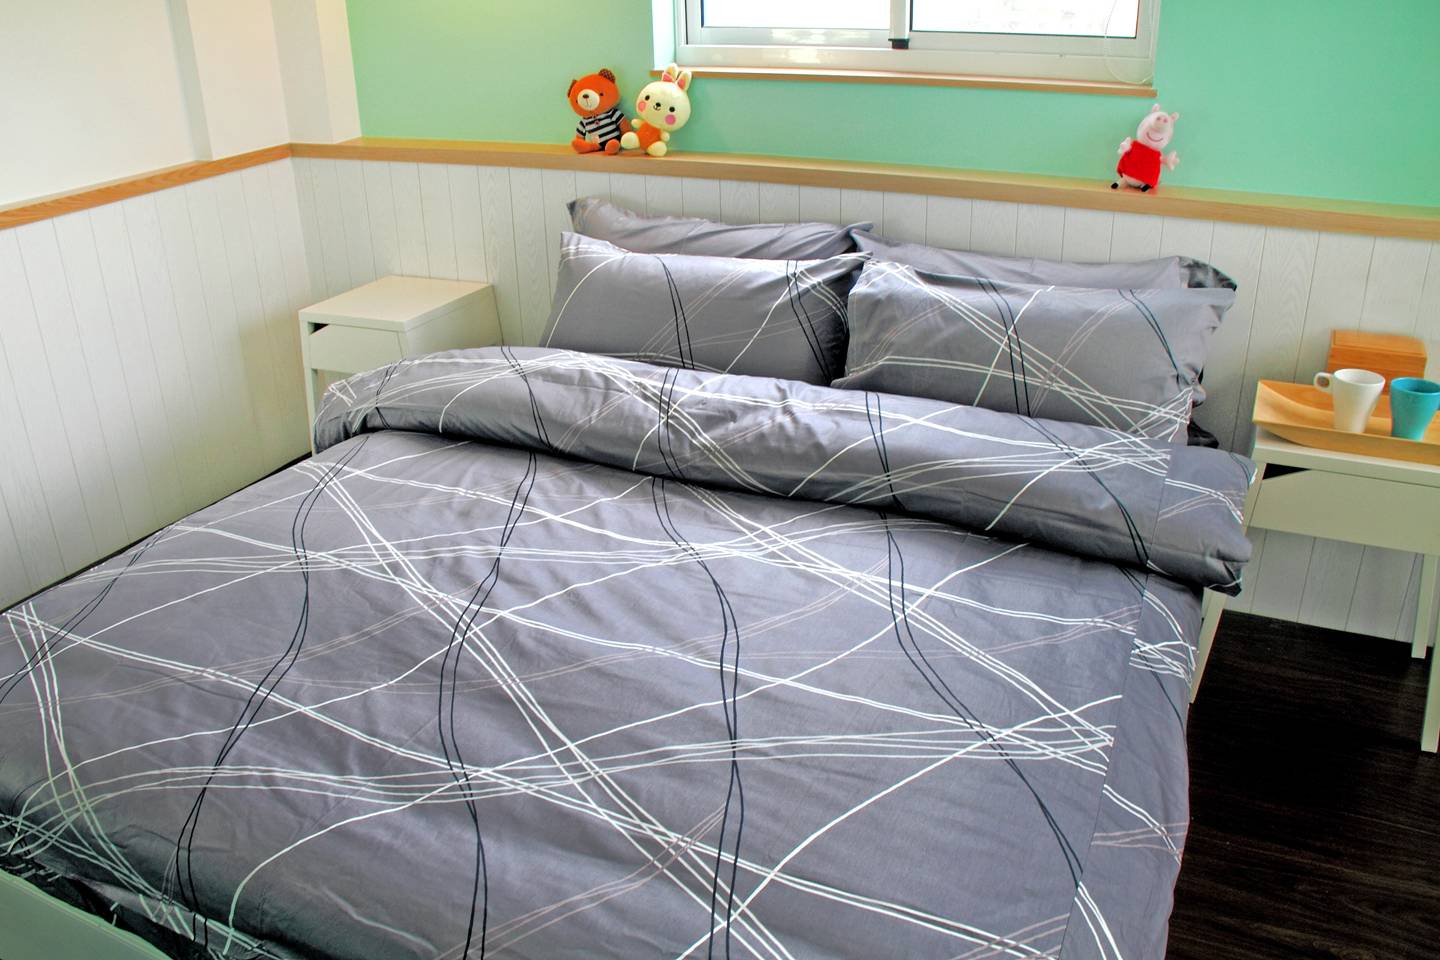 床包 / 雙人 印花設計款 / 幾何線條 100%精梳棉  雙人床包含二個枕套